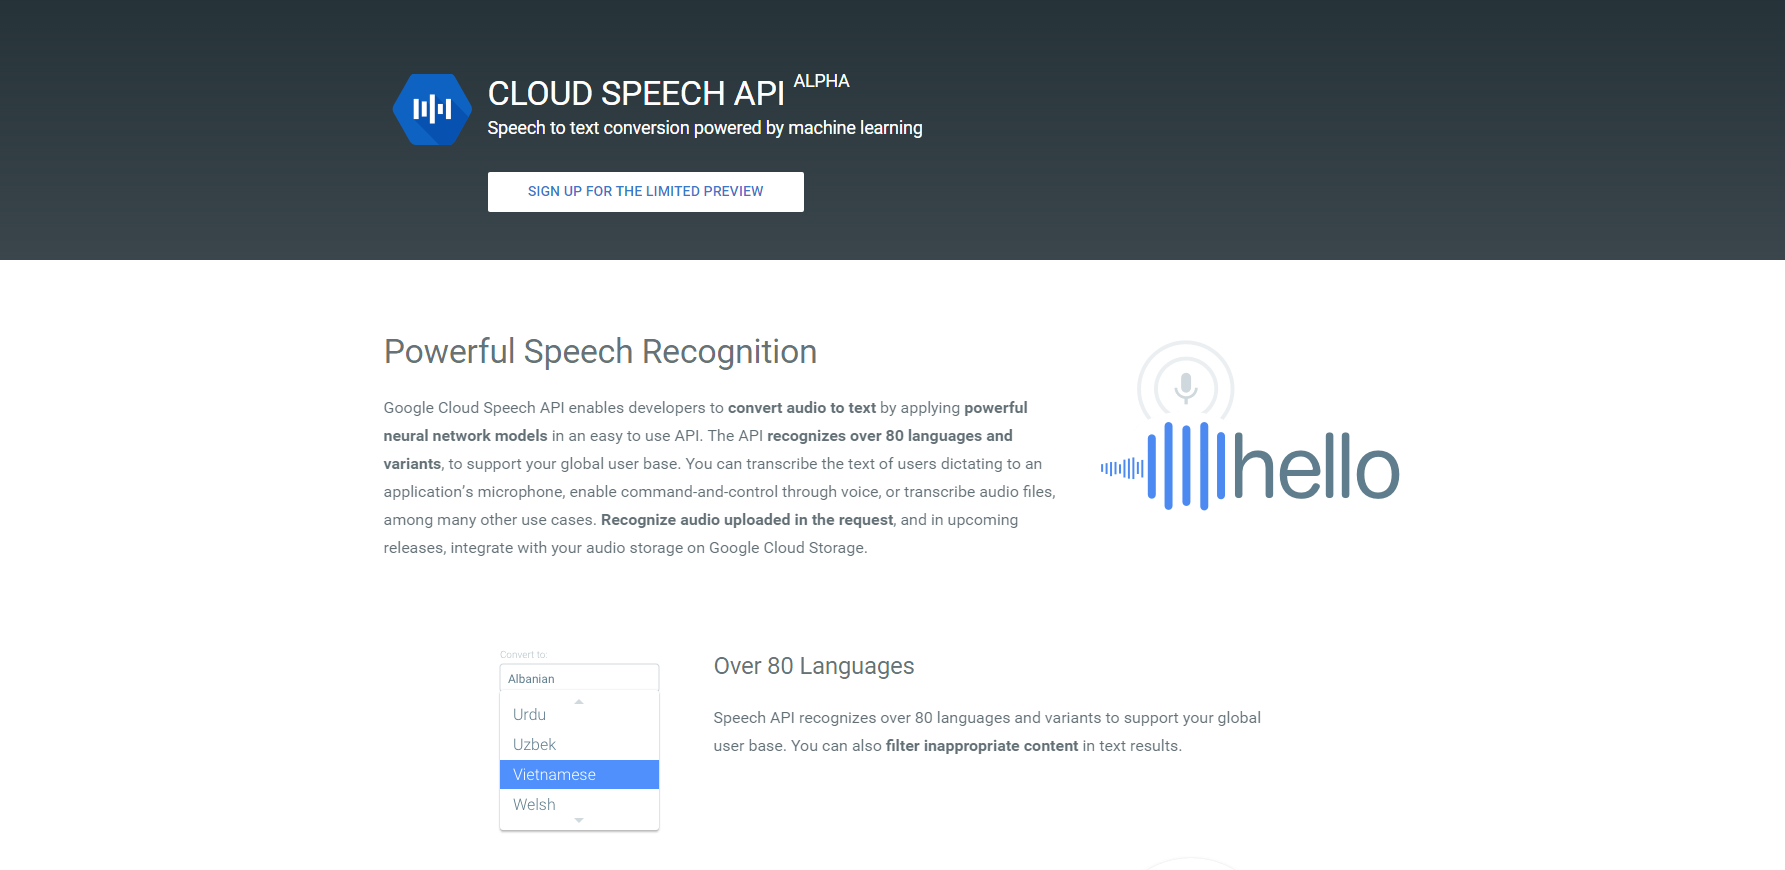 CLOUD SPEECH API